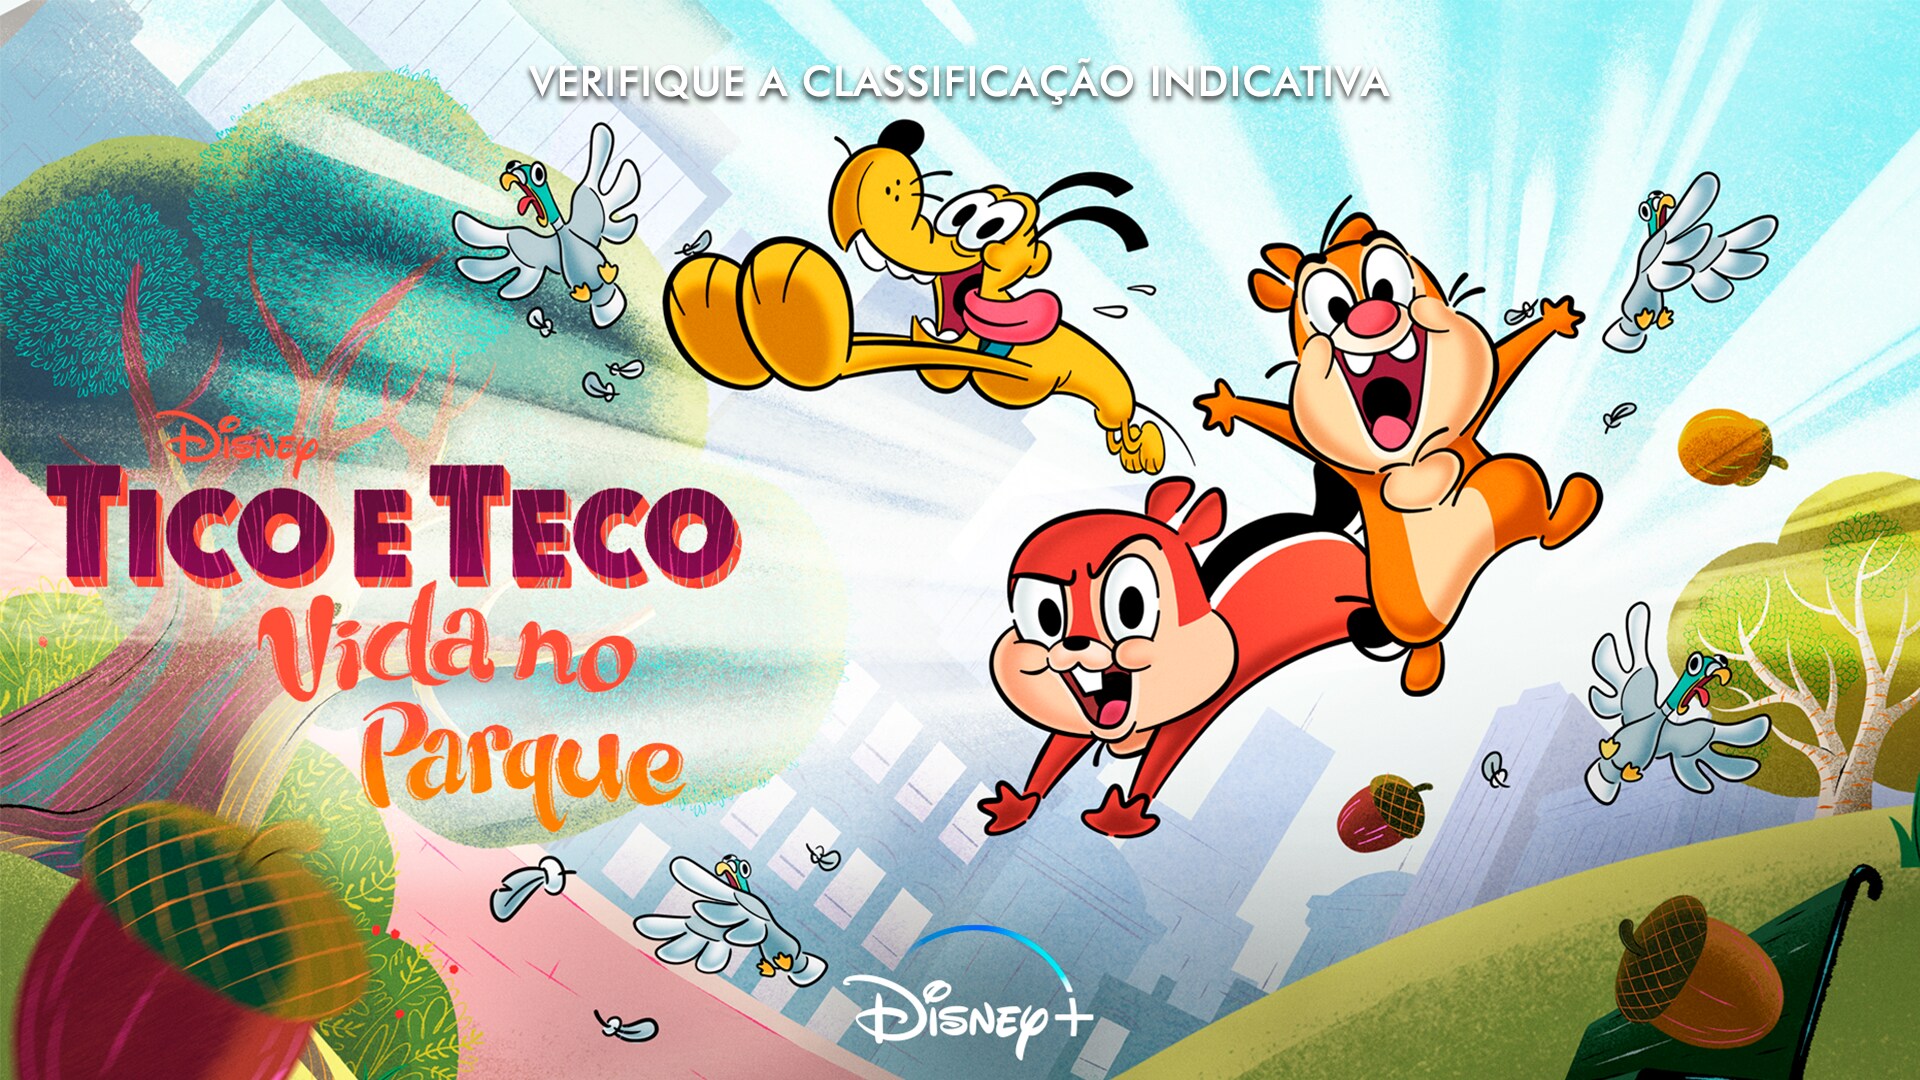 Tico e Teco: Vida no Parque: Série que apresenta a história dos dois  pequenos encrenqueiros já está disponível no Disney+. Veja conferir algumas  curiosidades da dupla !